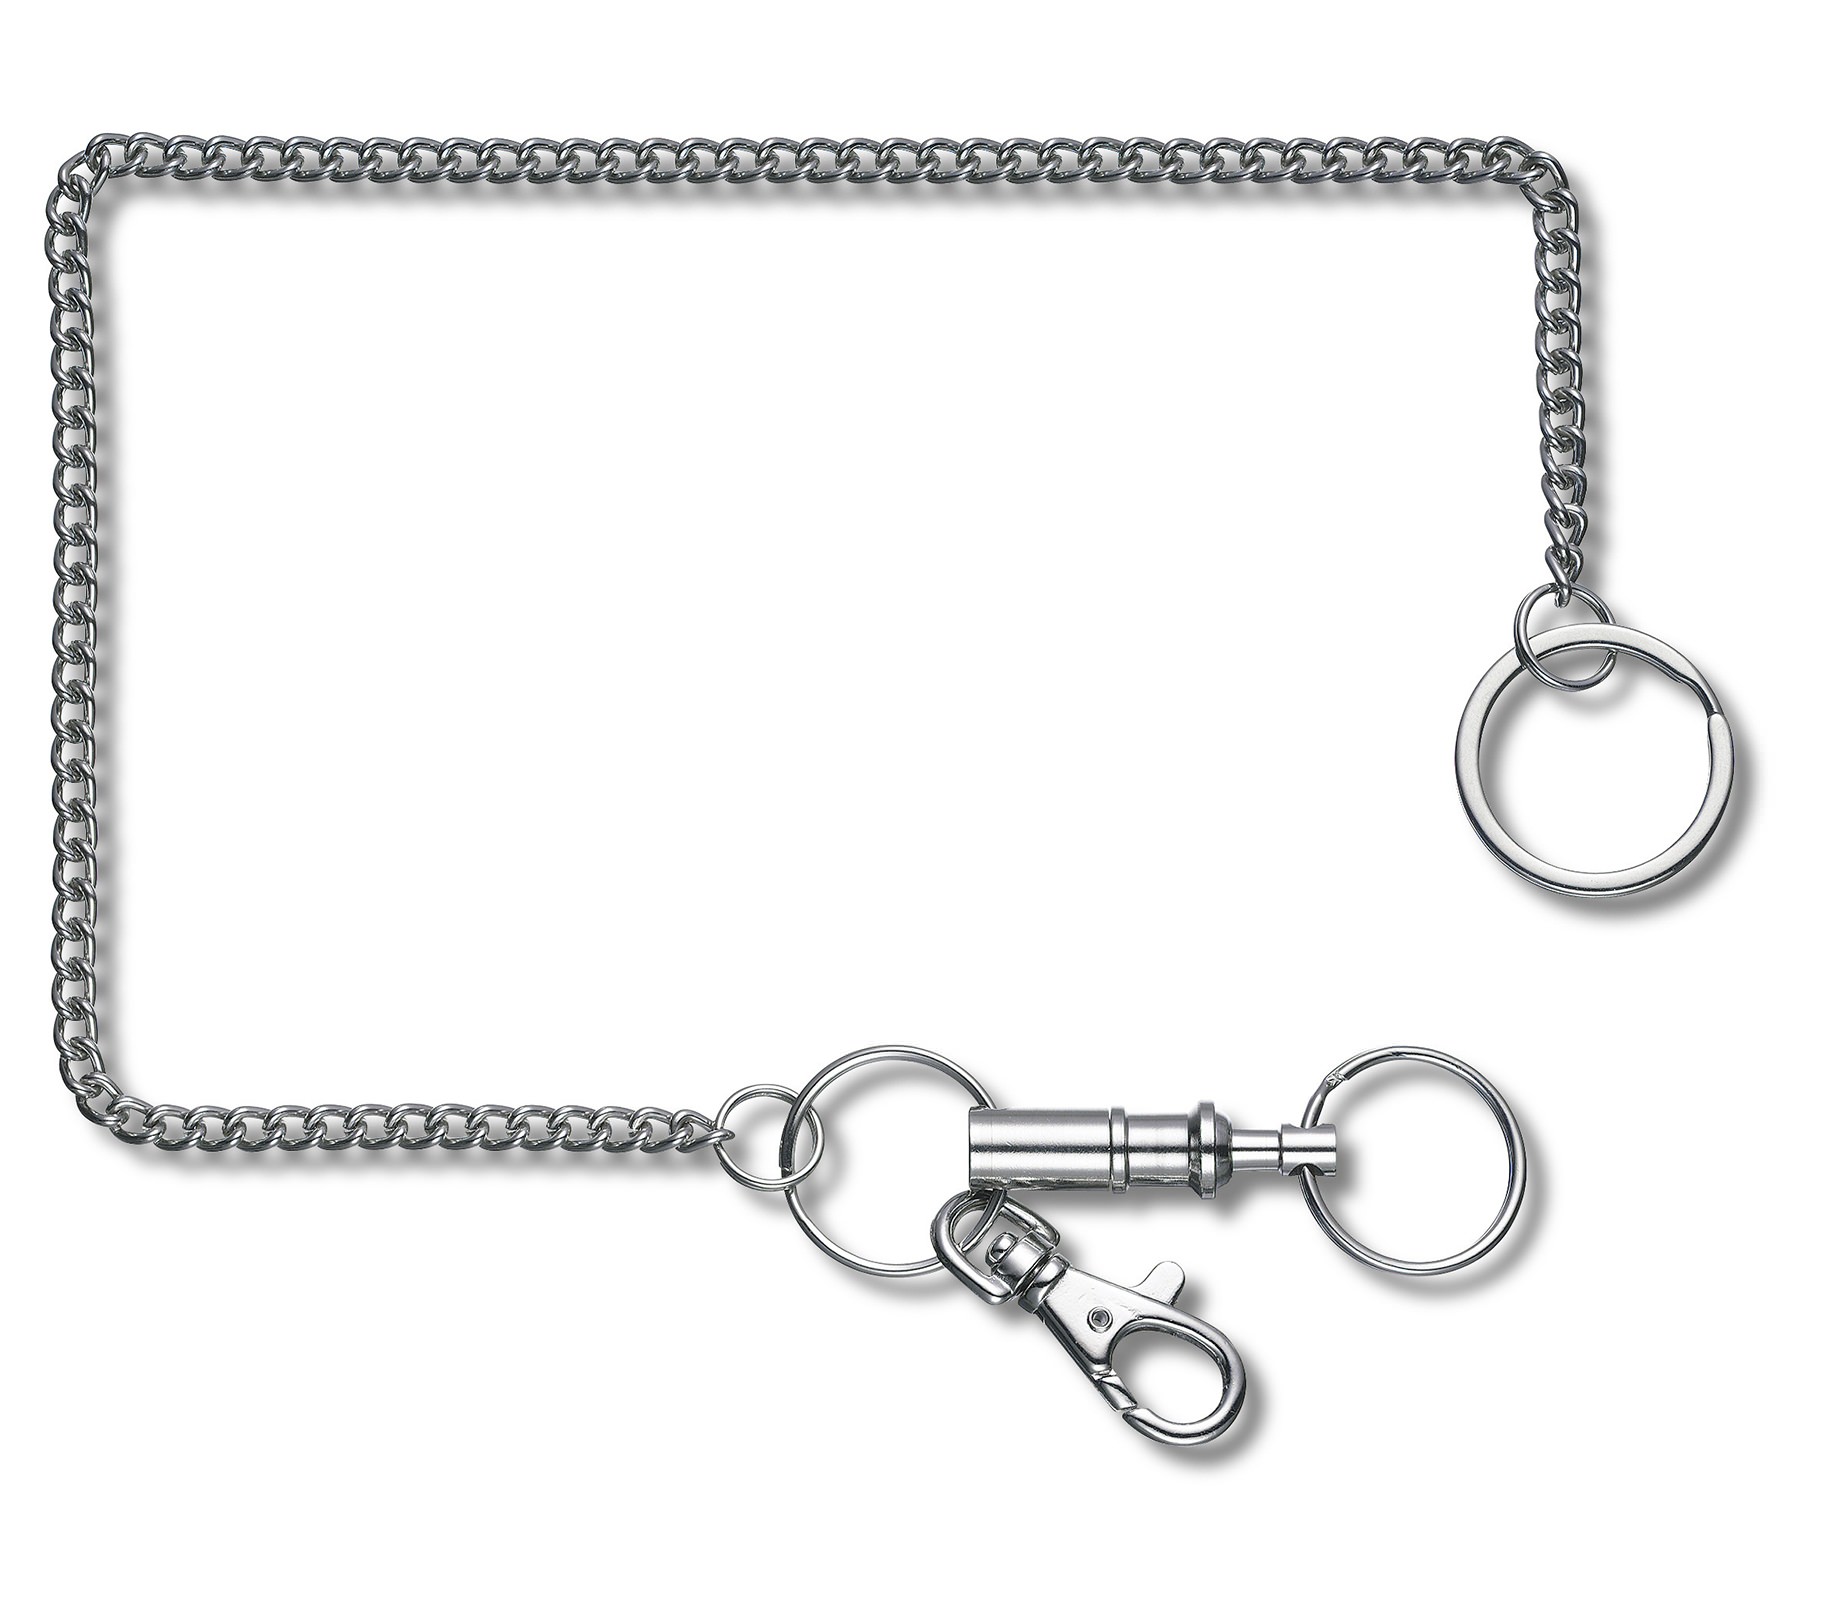 Móc chìa khóa bằng kim loại đồ dùng dã ngoại 4.1854 - Phân phối hàng chính hãng Victorinox